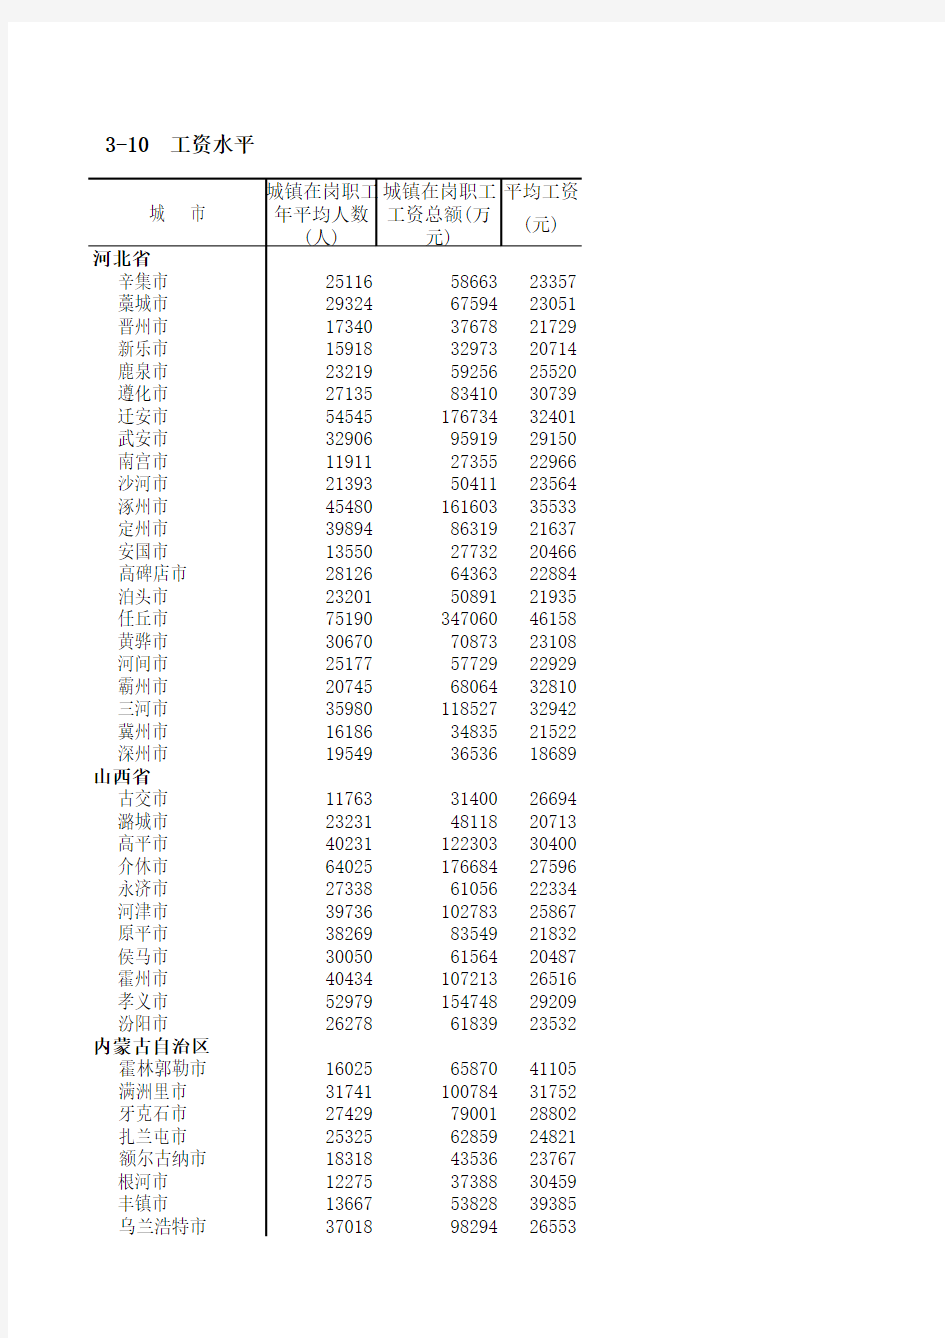 2010中国城市统计年鉴